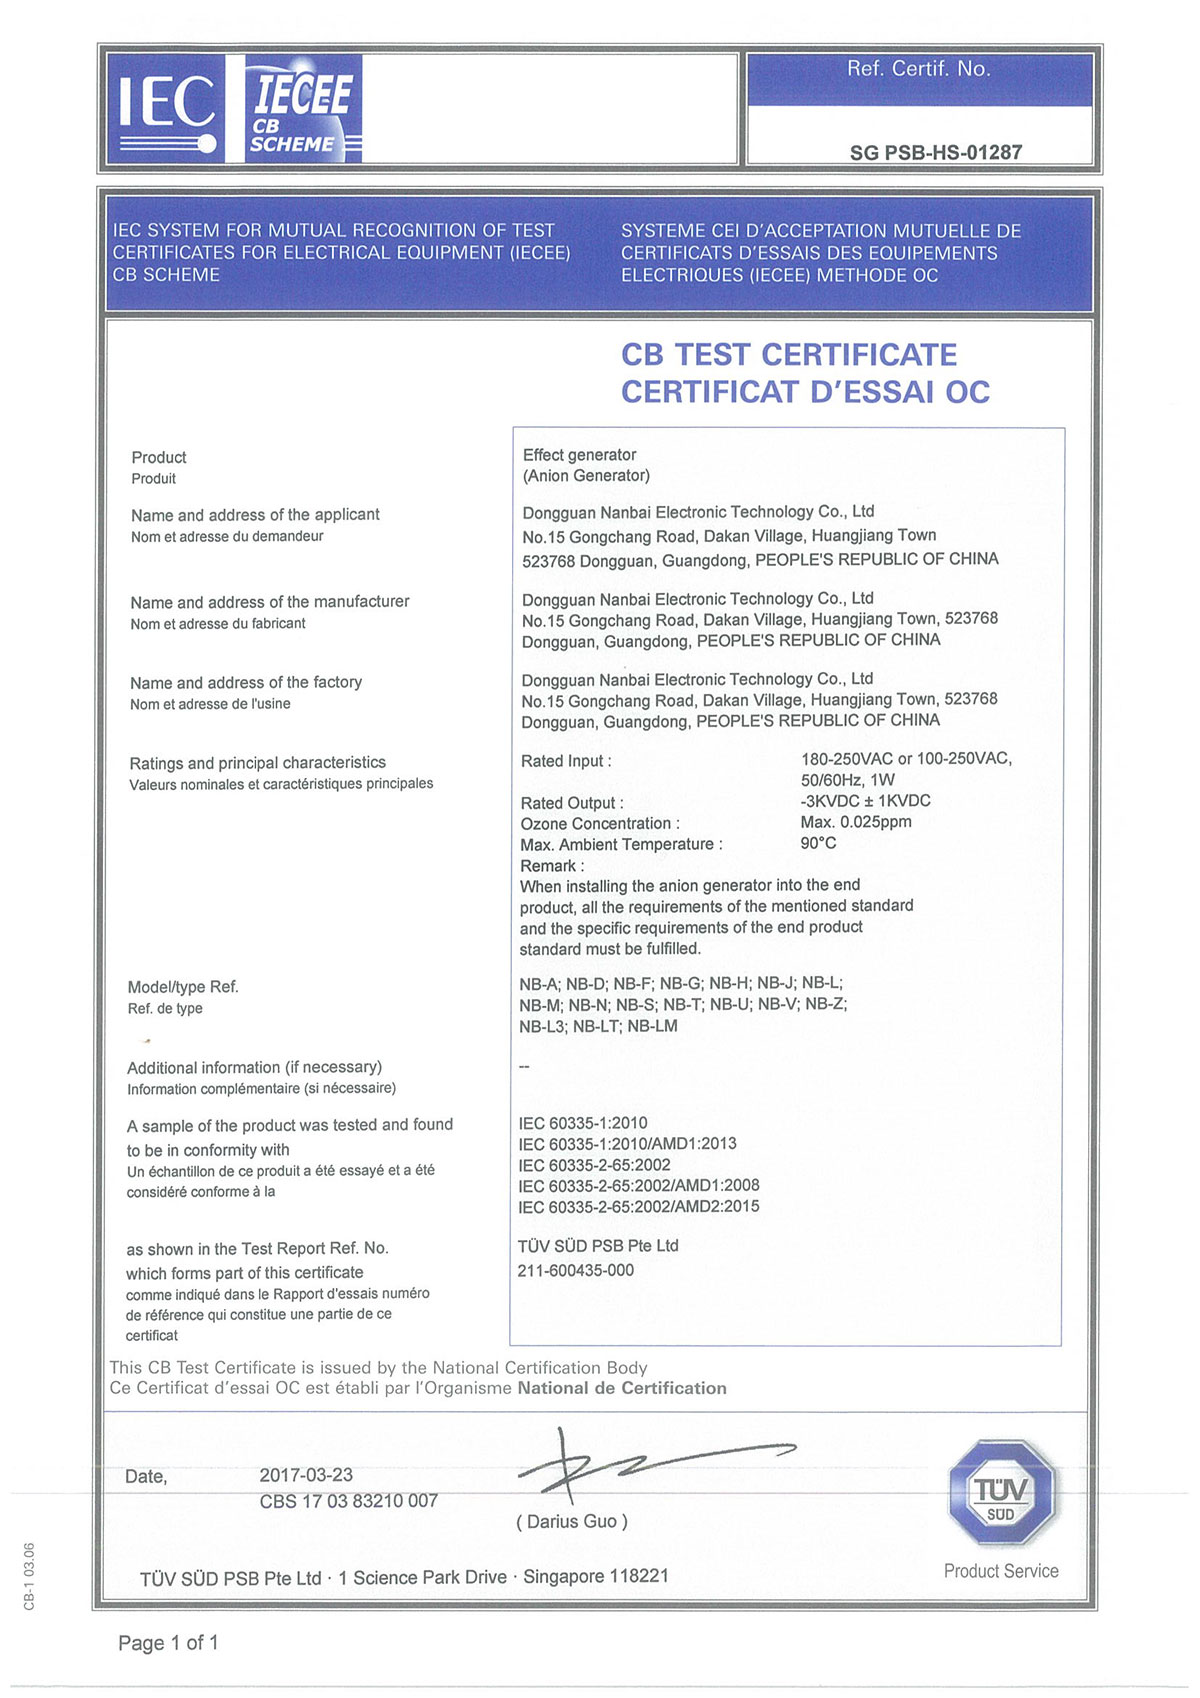 CB Certificates